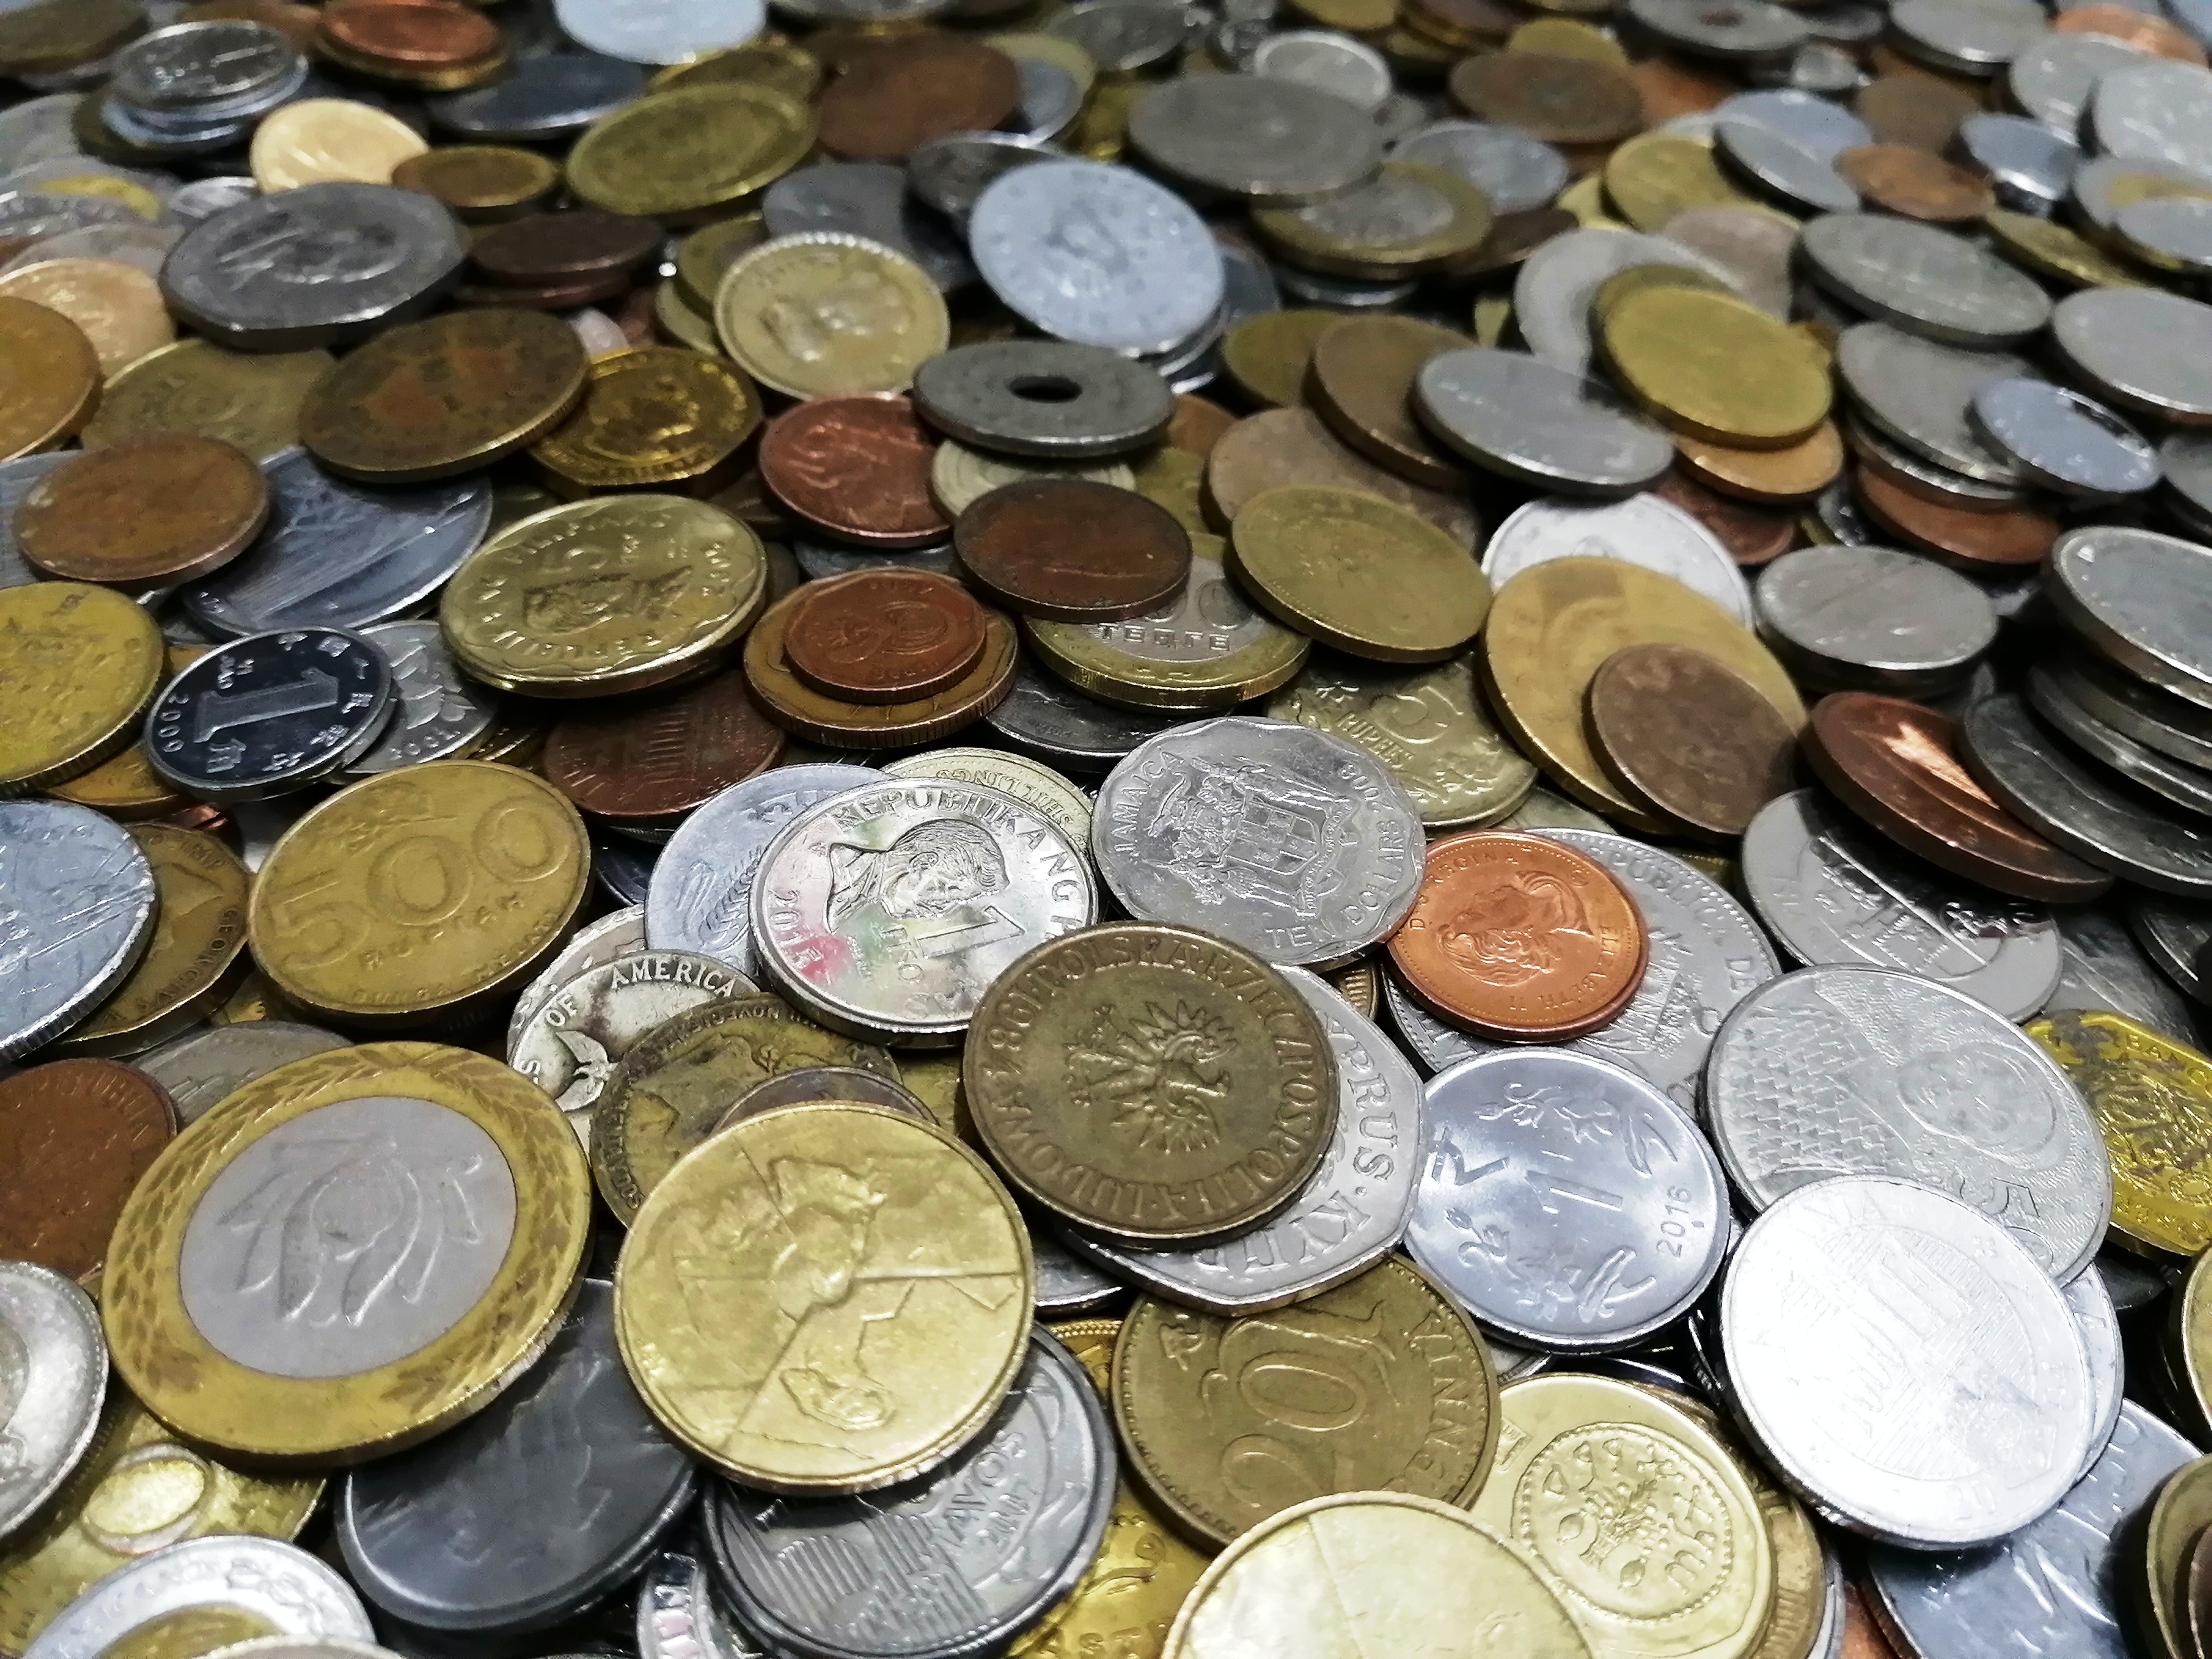 Миксы монет на вес по 1 кг. Содержание экзотики 50%., фото , изображение 8